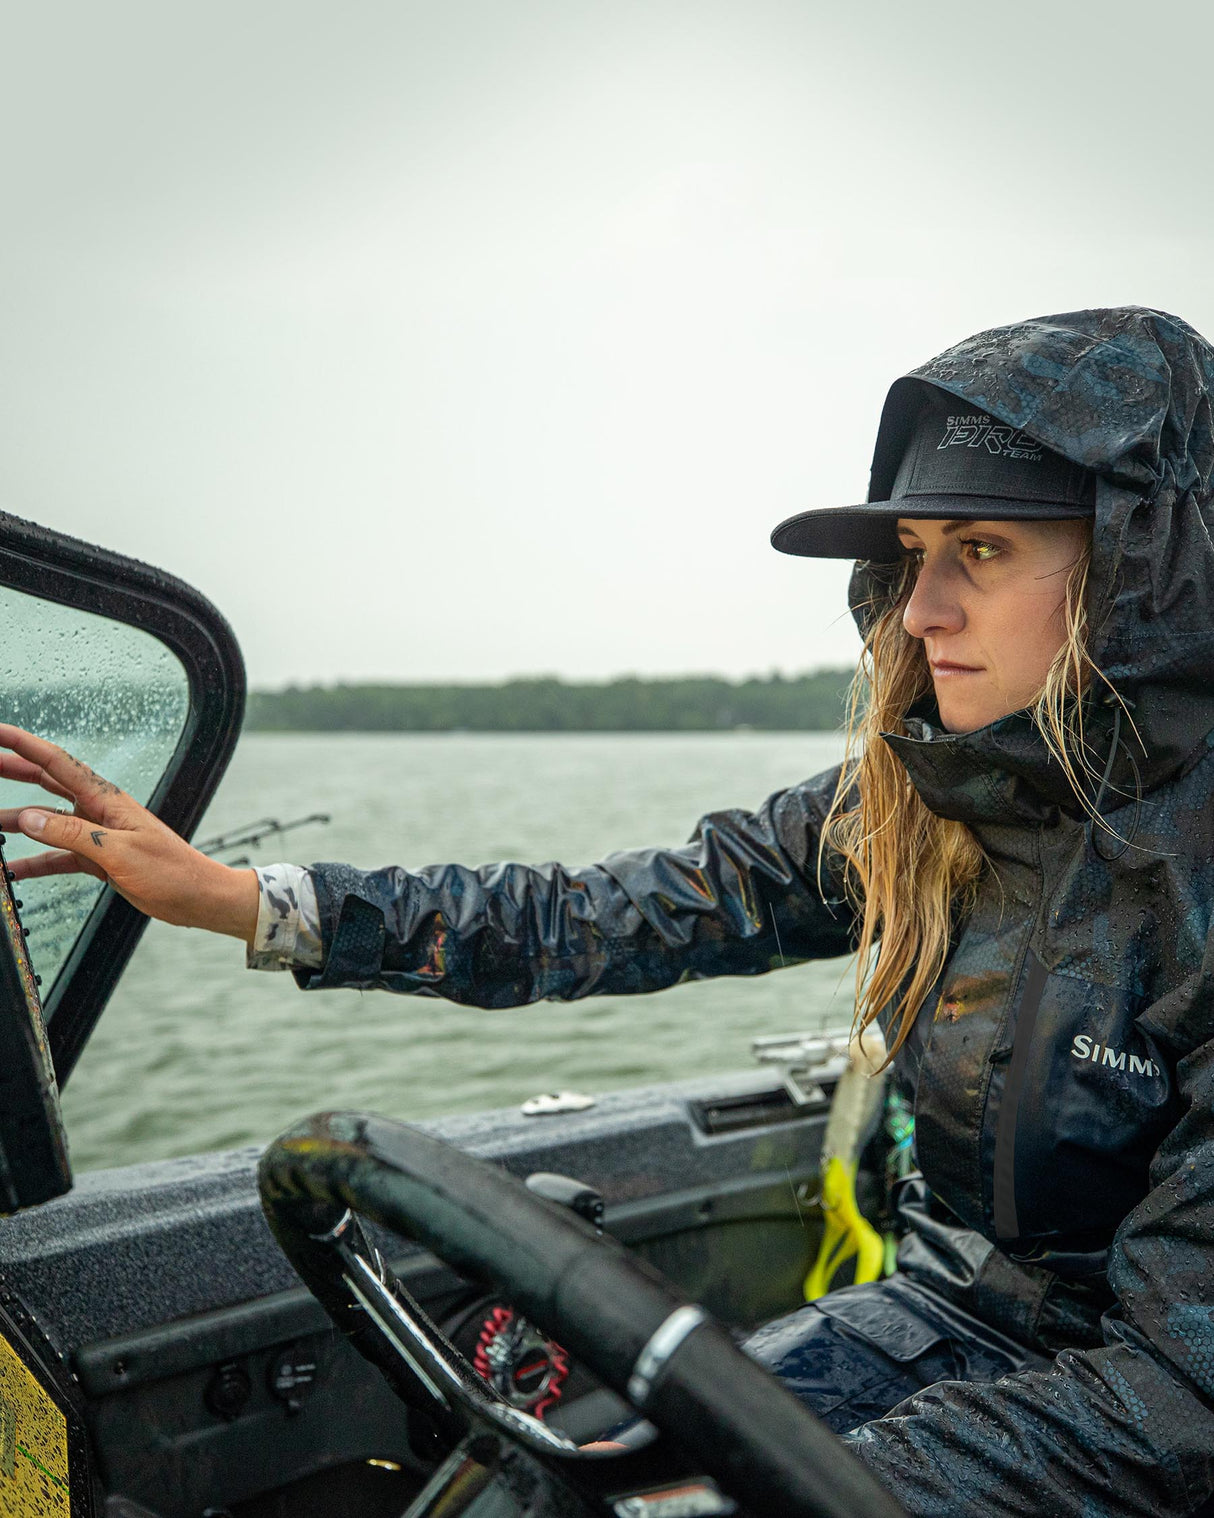 Simms Women's Challenger Jacket, Waterproof Fishing Gear